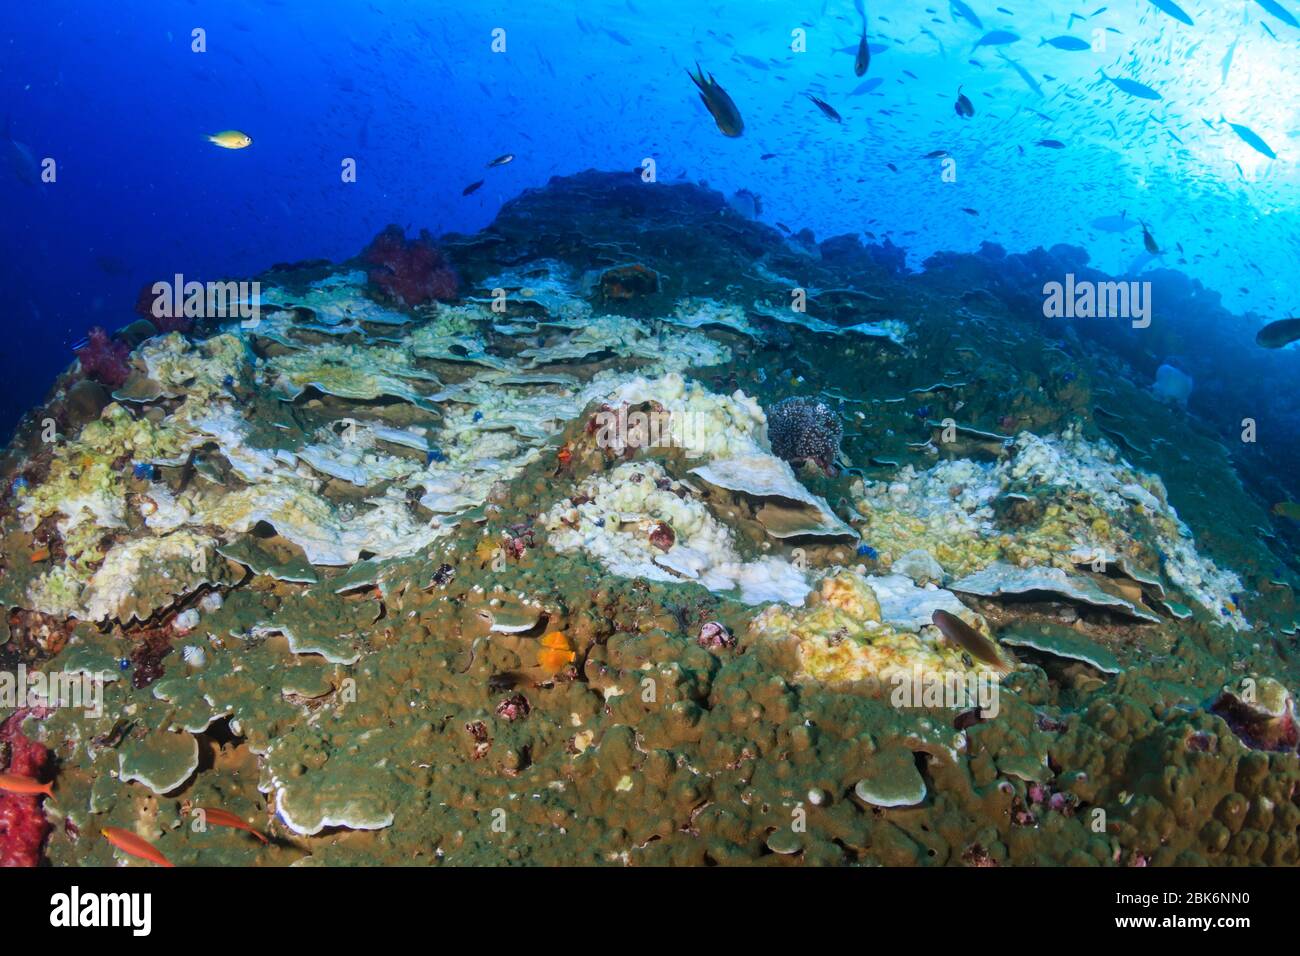 Evento de blanquimiento de corales subacuáticos en un sistema de arrecifes de coral duros debido a temperaturas oceánicas más altas de lo normal Foto de stock